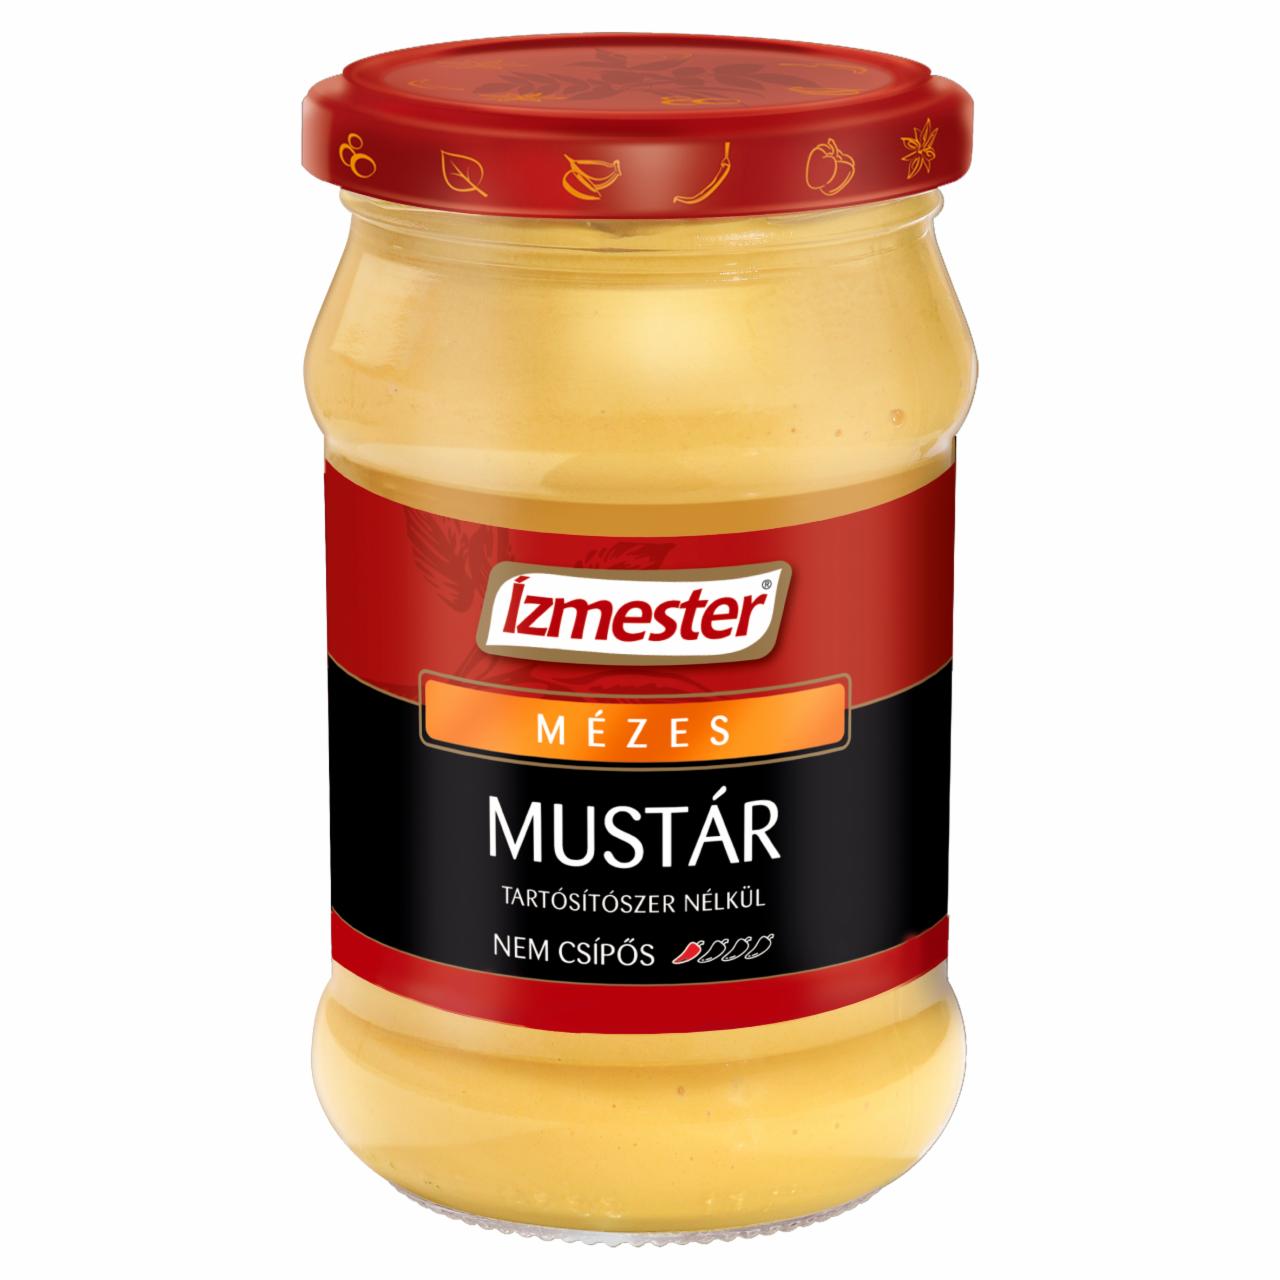 Képek - Ízmester mézes mustár 310 g